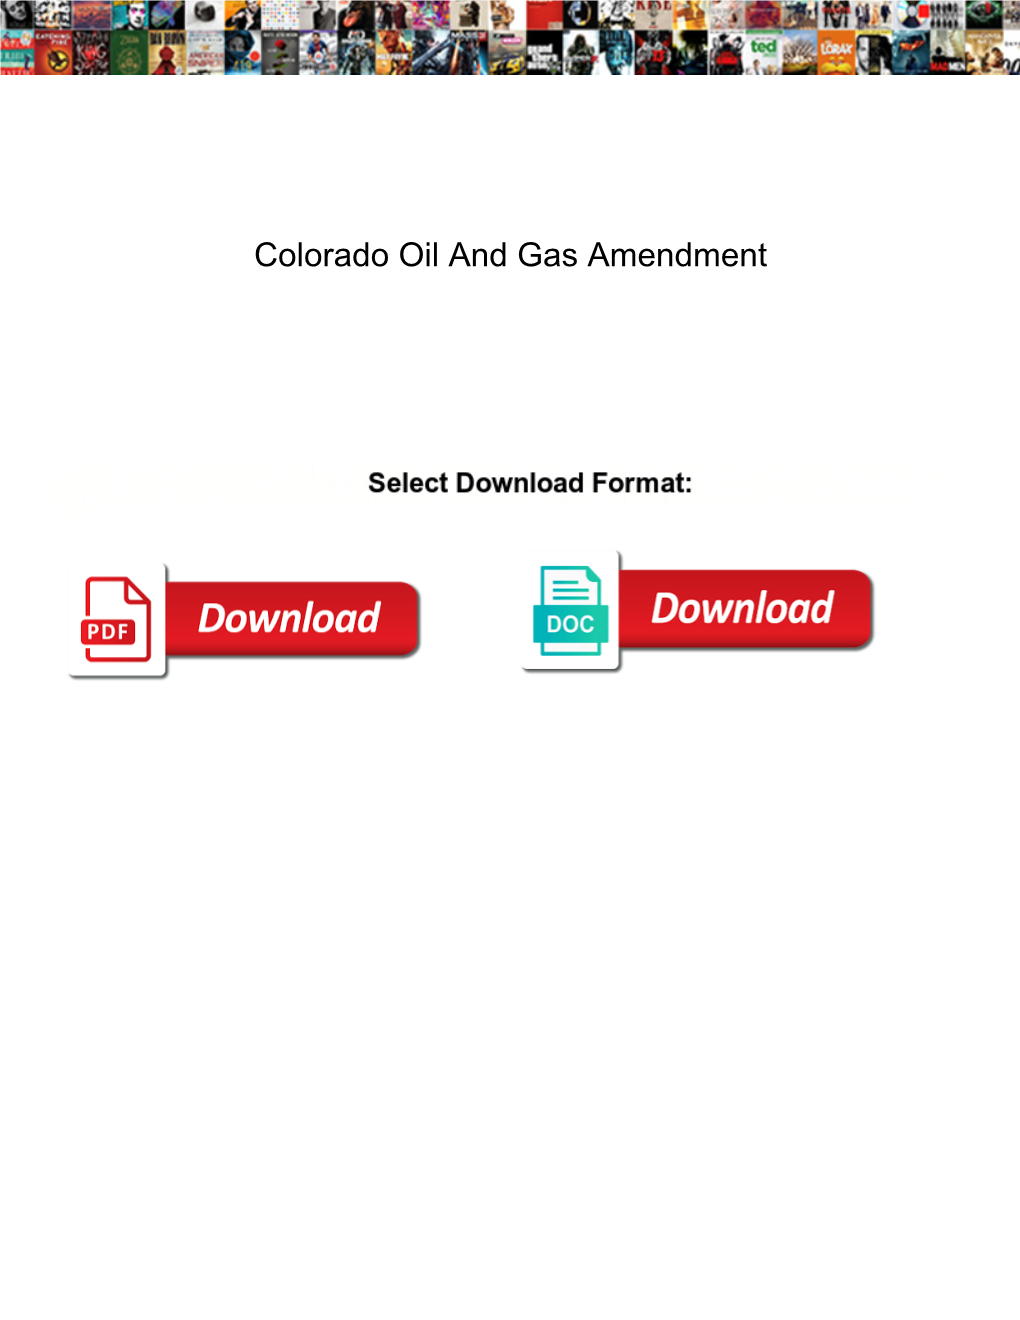 Colorado Oil and Gas Amendment